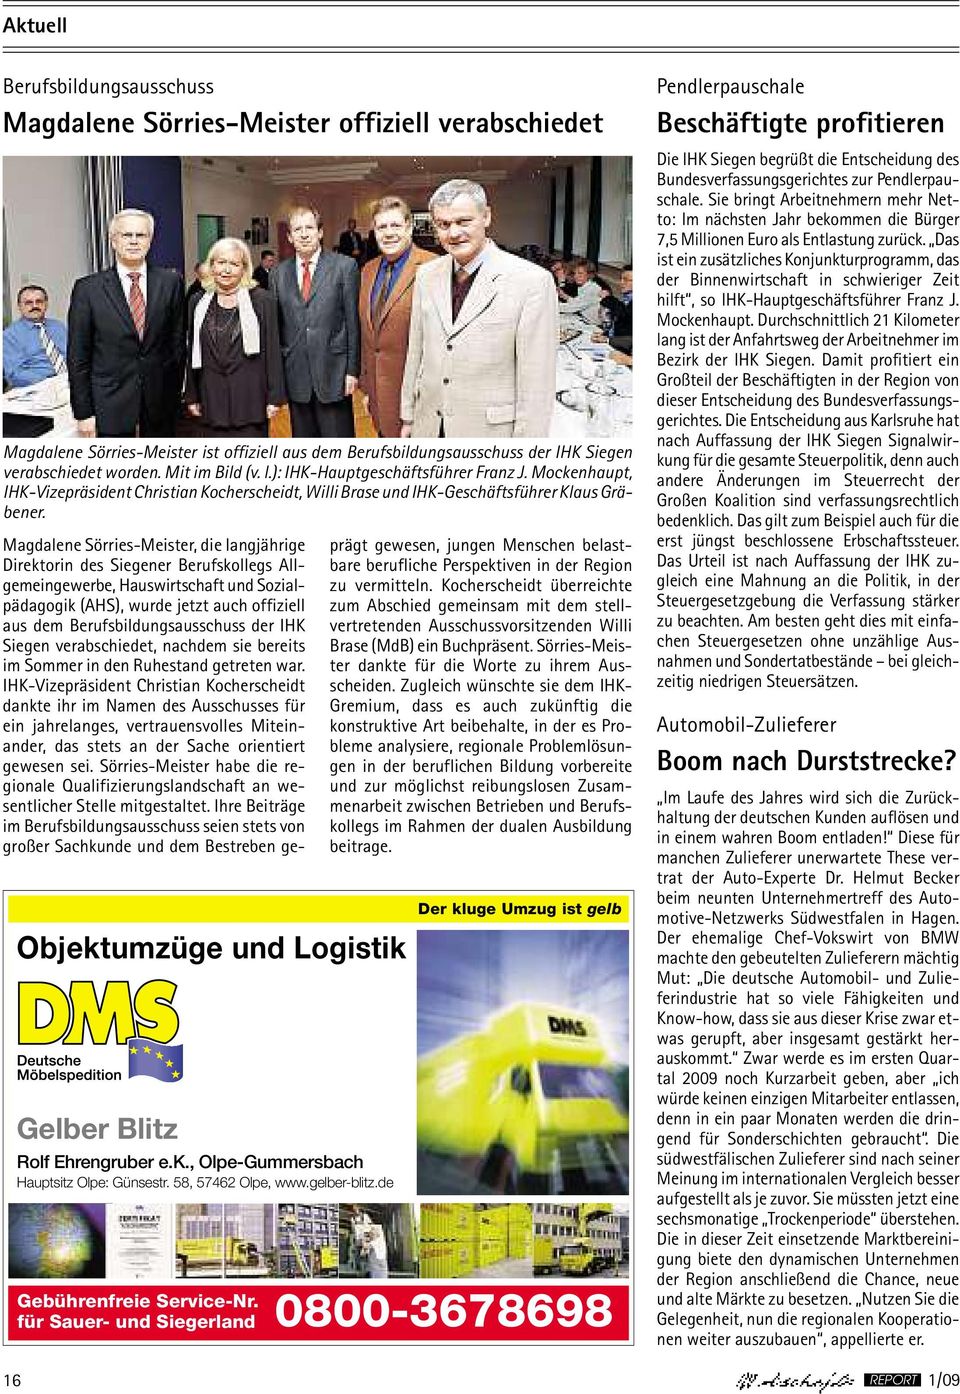 Objektumzüge und Logistik Gelber Blitz Rolf Ehrengruber e.k., Olpe-Gummersbach Hauptsitz Olpe: RolfGünsestr. Ehrengruber 58, e.k., 57462 Olpe-Gummersbach Olpe, www.gelber-blitz.